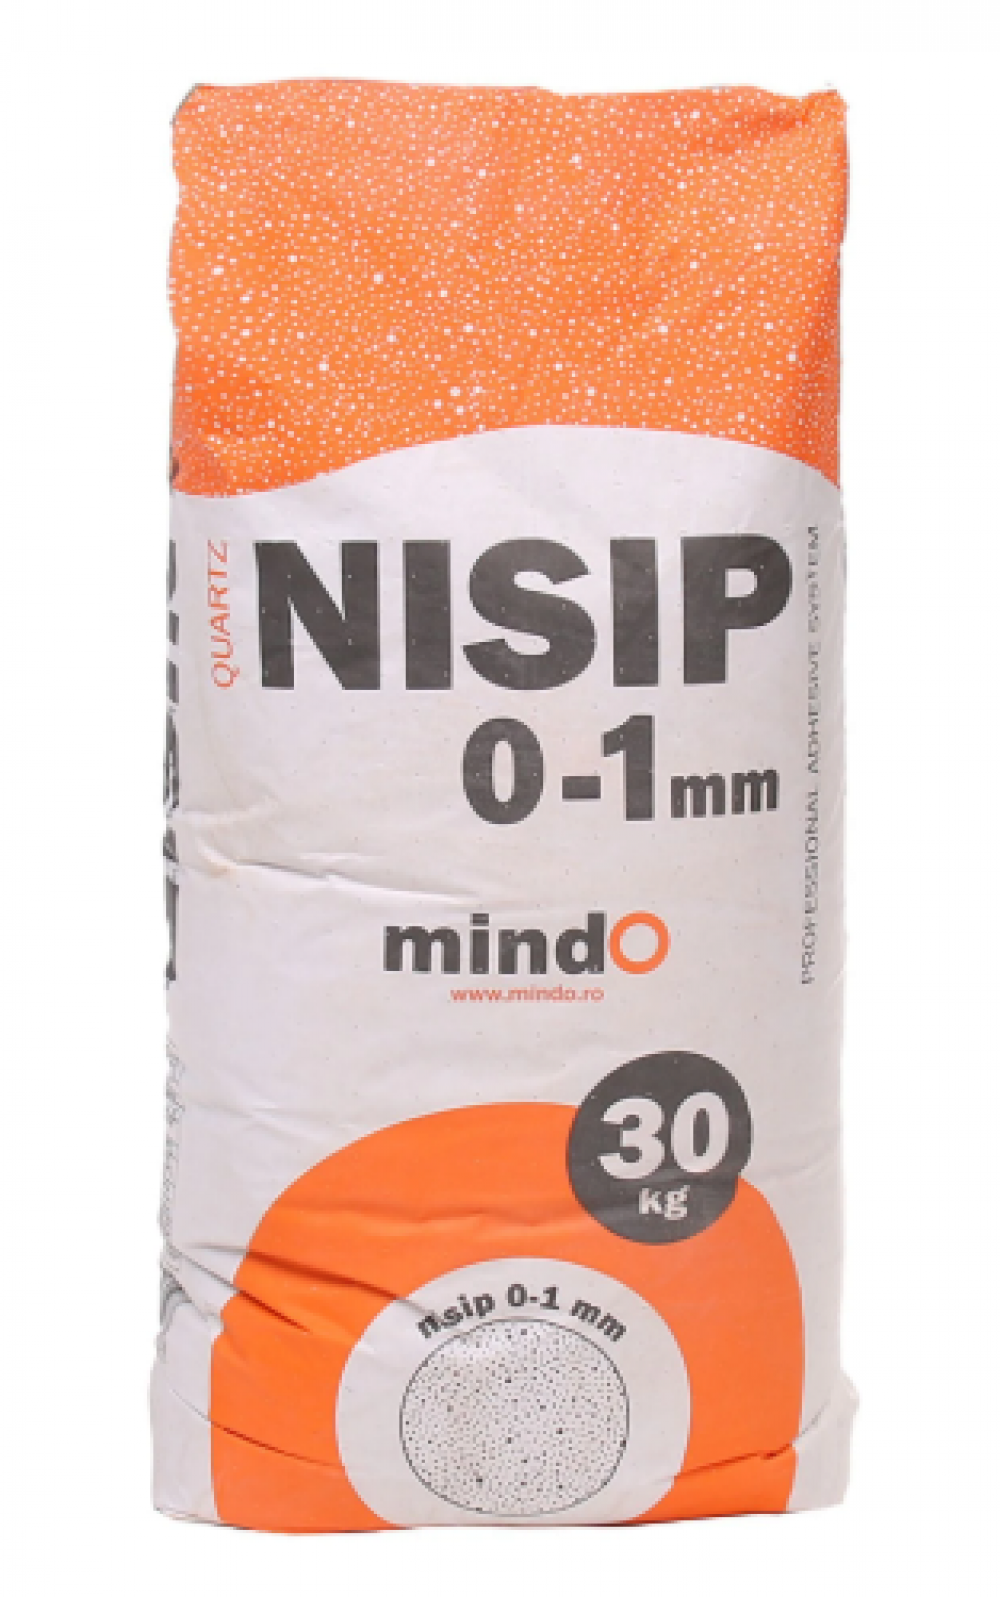 Nisip pentru constructii Mindo interior / exterior 0 - 1 mm 30 kg / sac